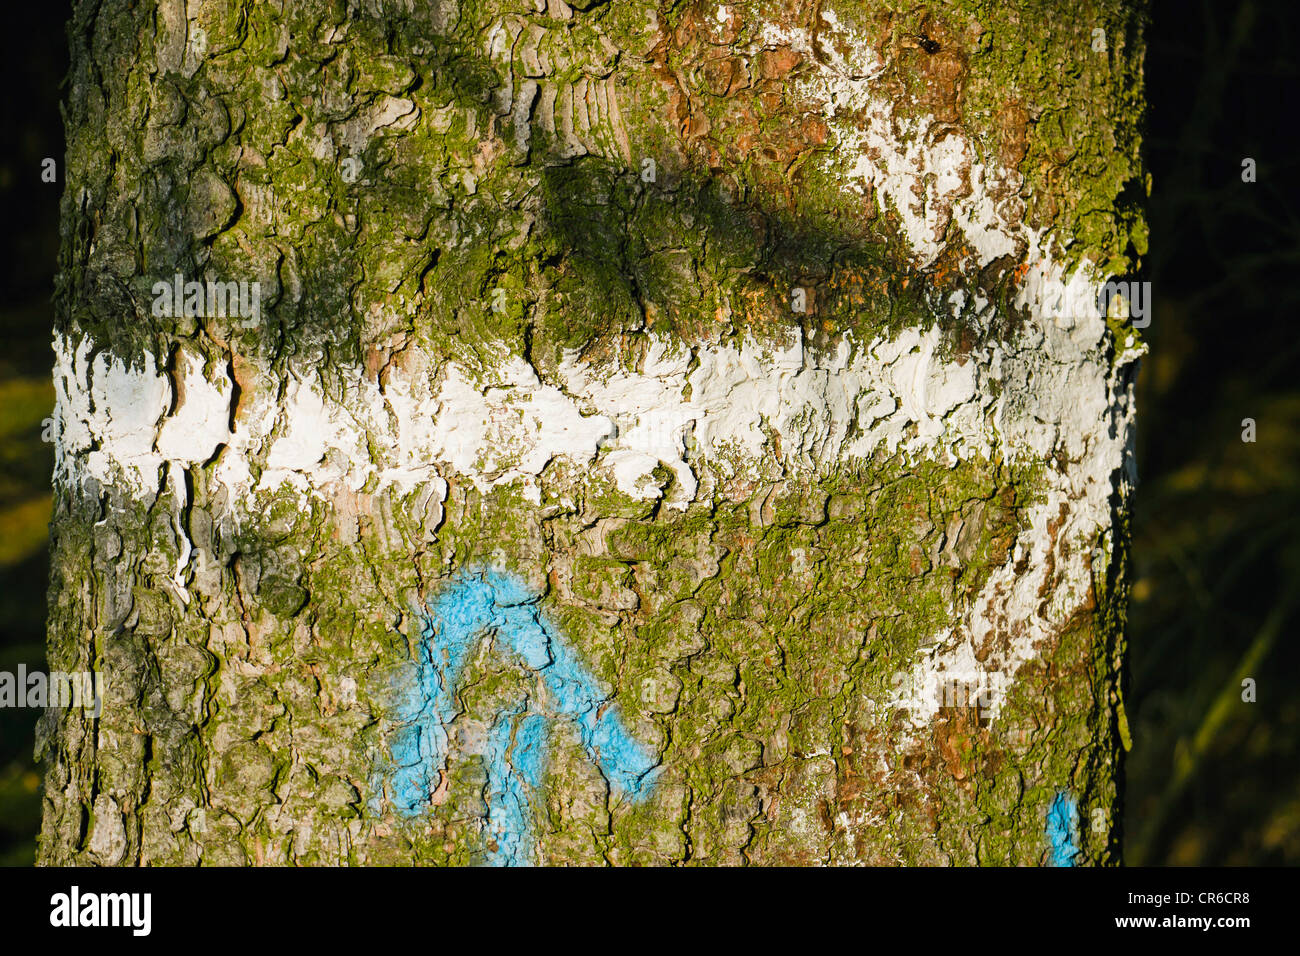 Germania, dipinto di segno di freccia sul tronco di albero, close up Foto Stock